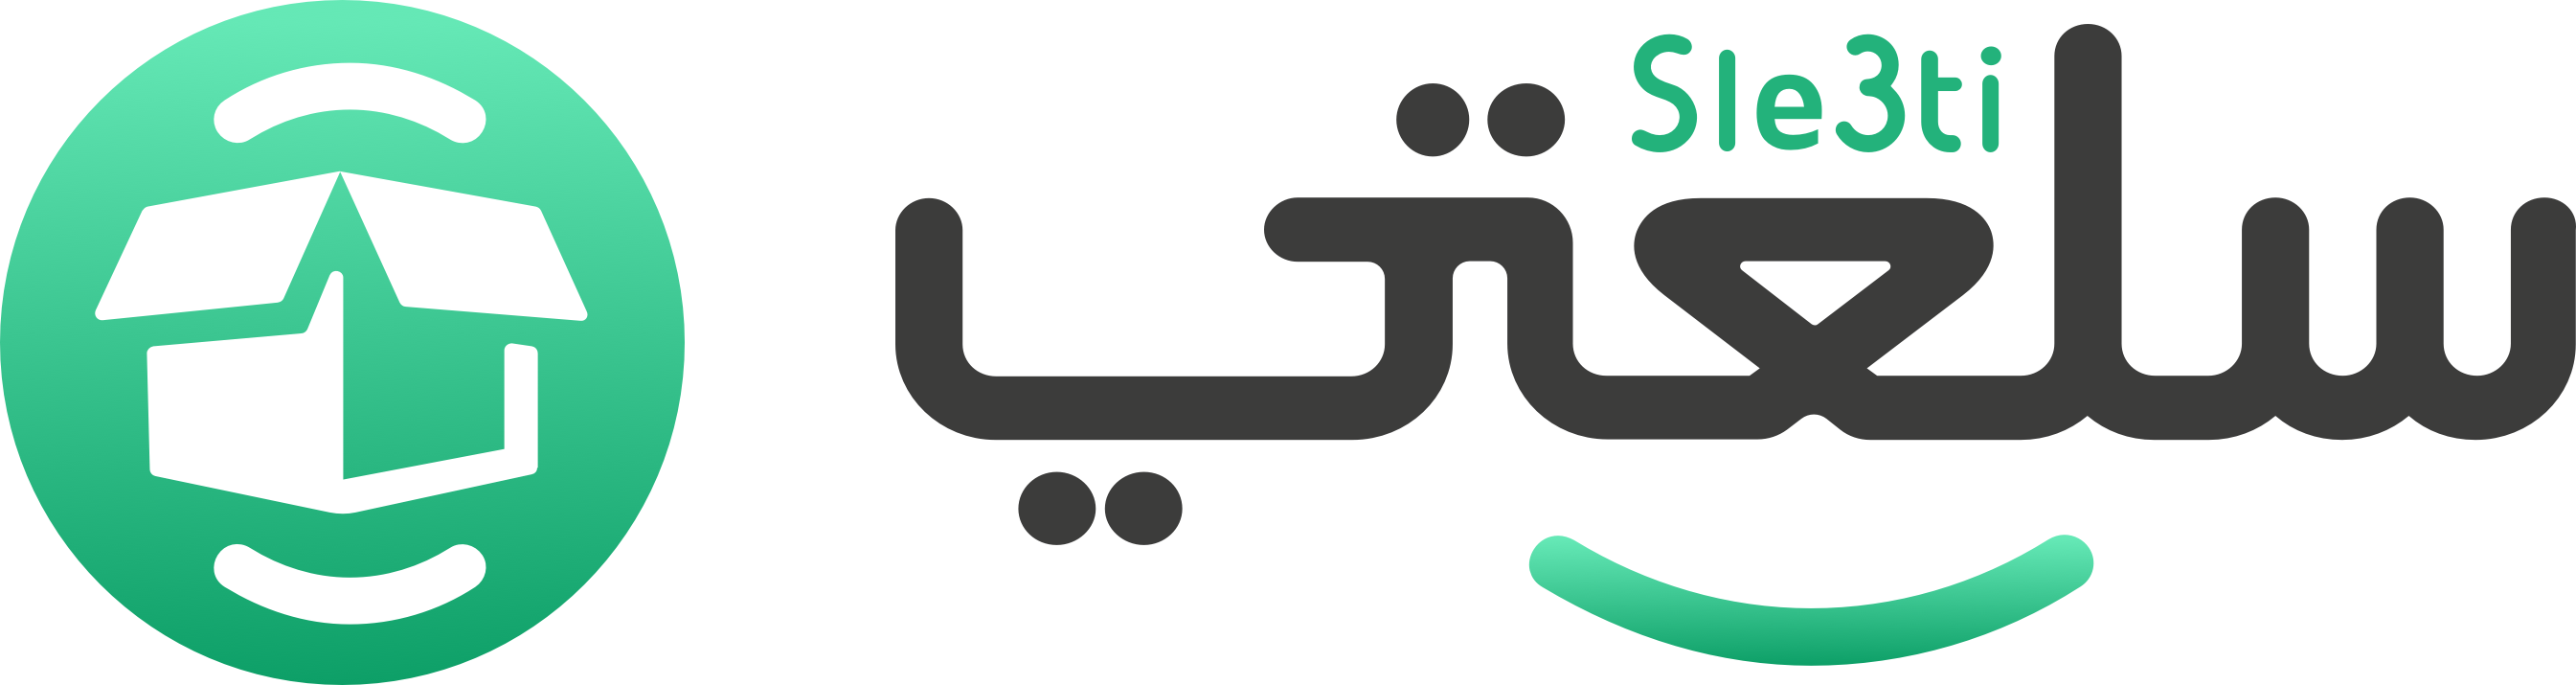 Sle3ti Logo